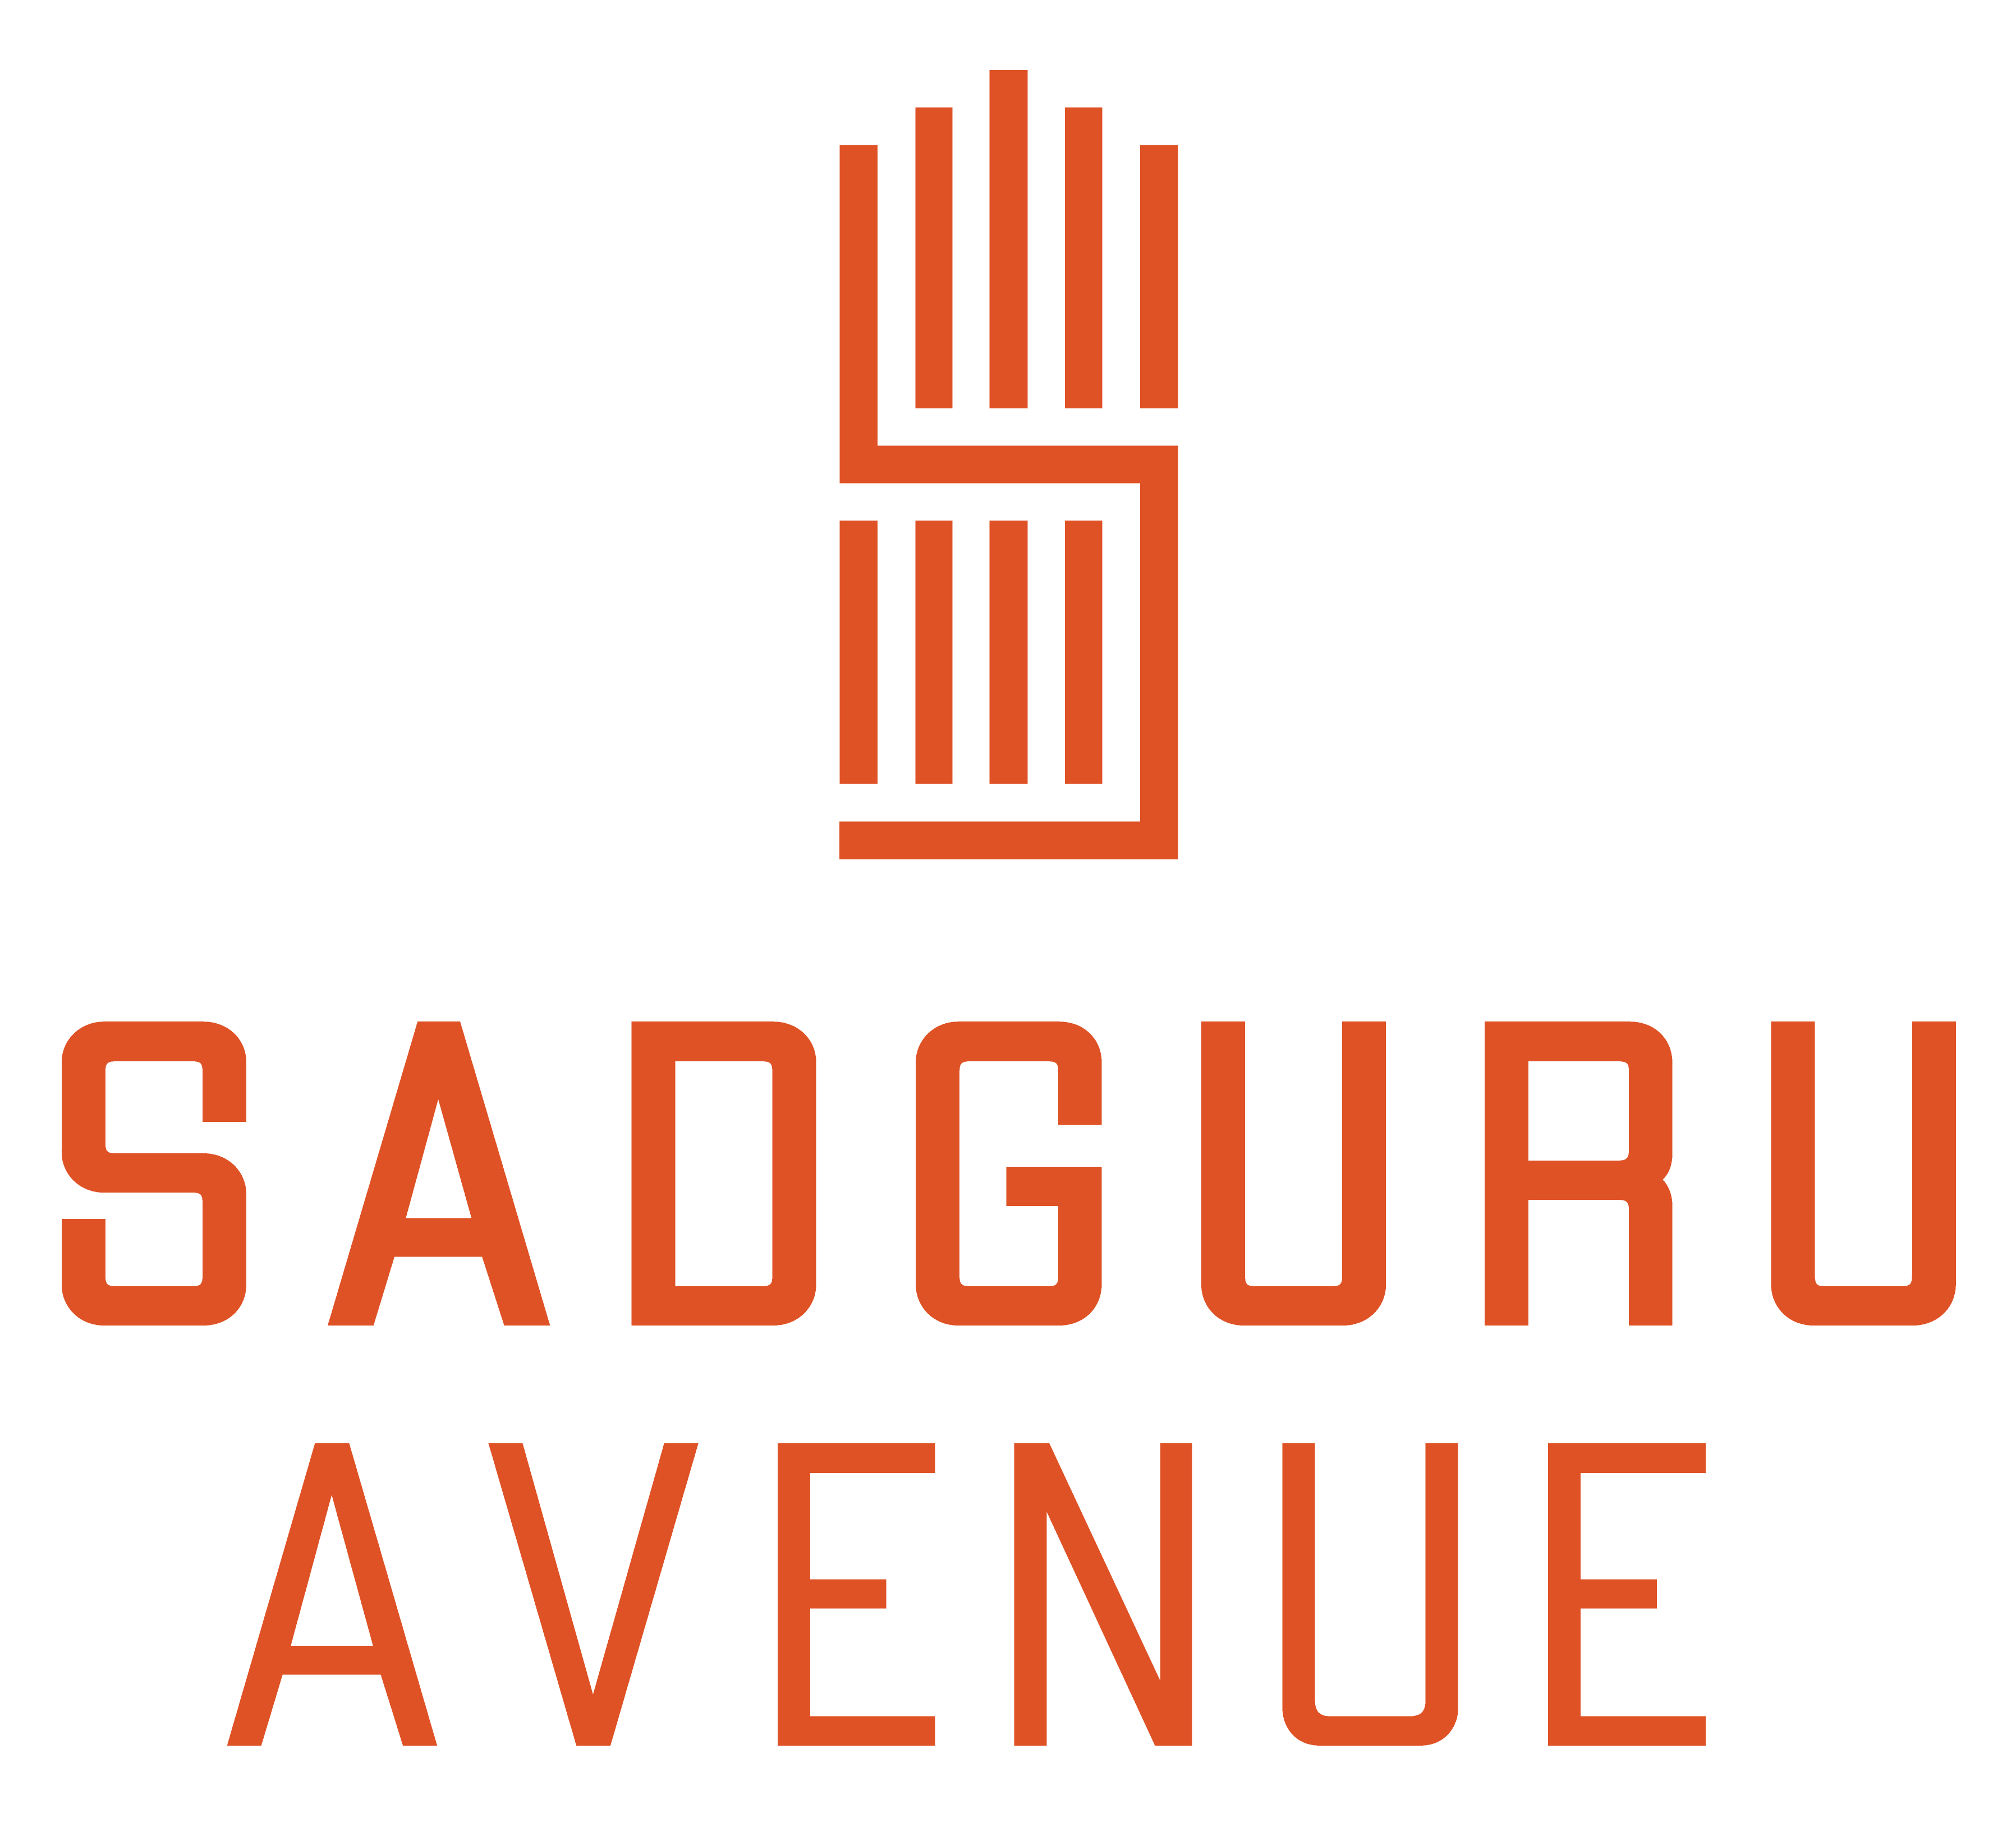 Sadguru Avenue